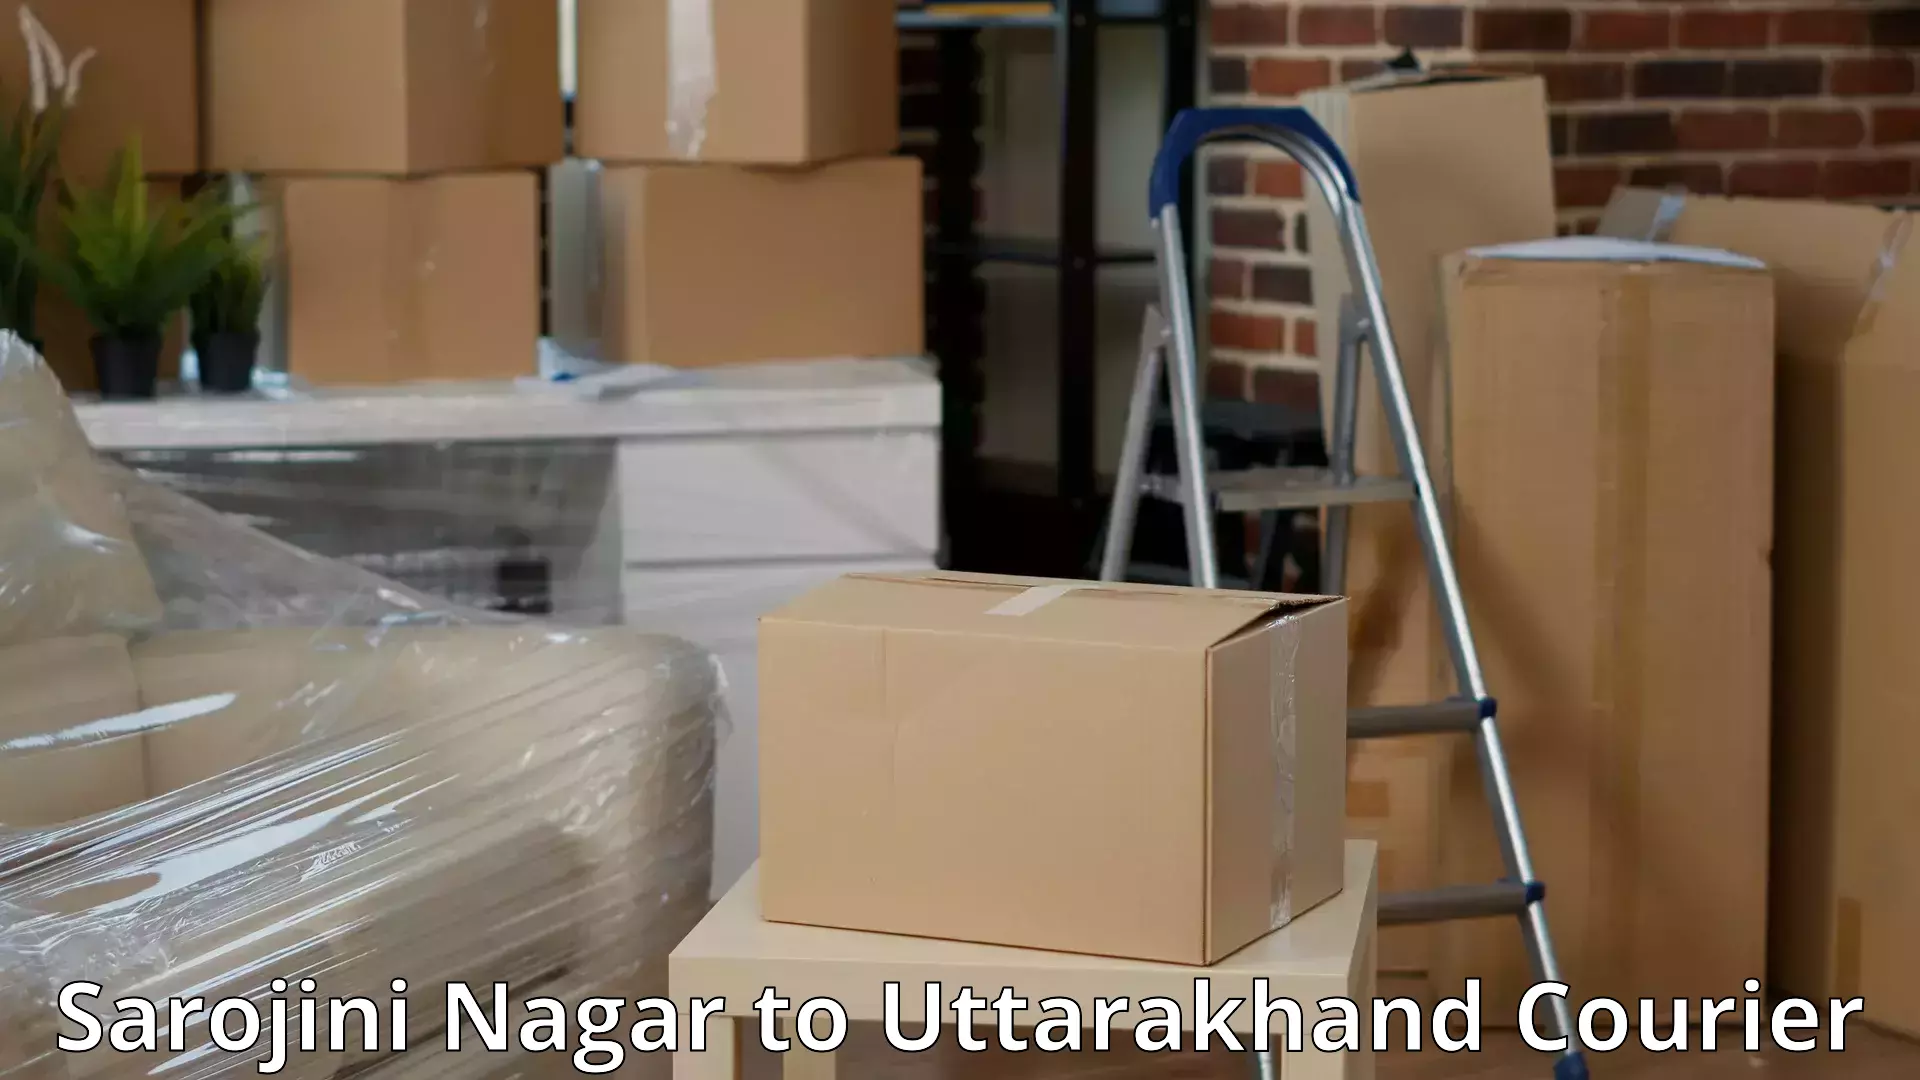 Expert goods movers Sarojini Nagar to Bageshwar